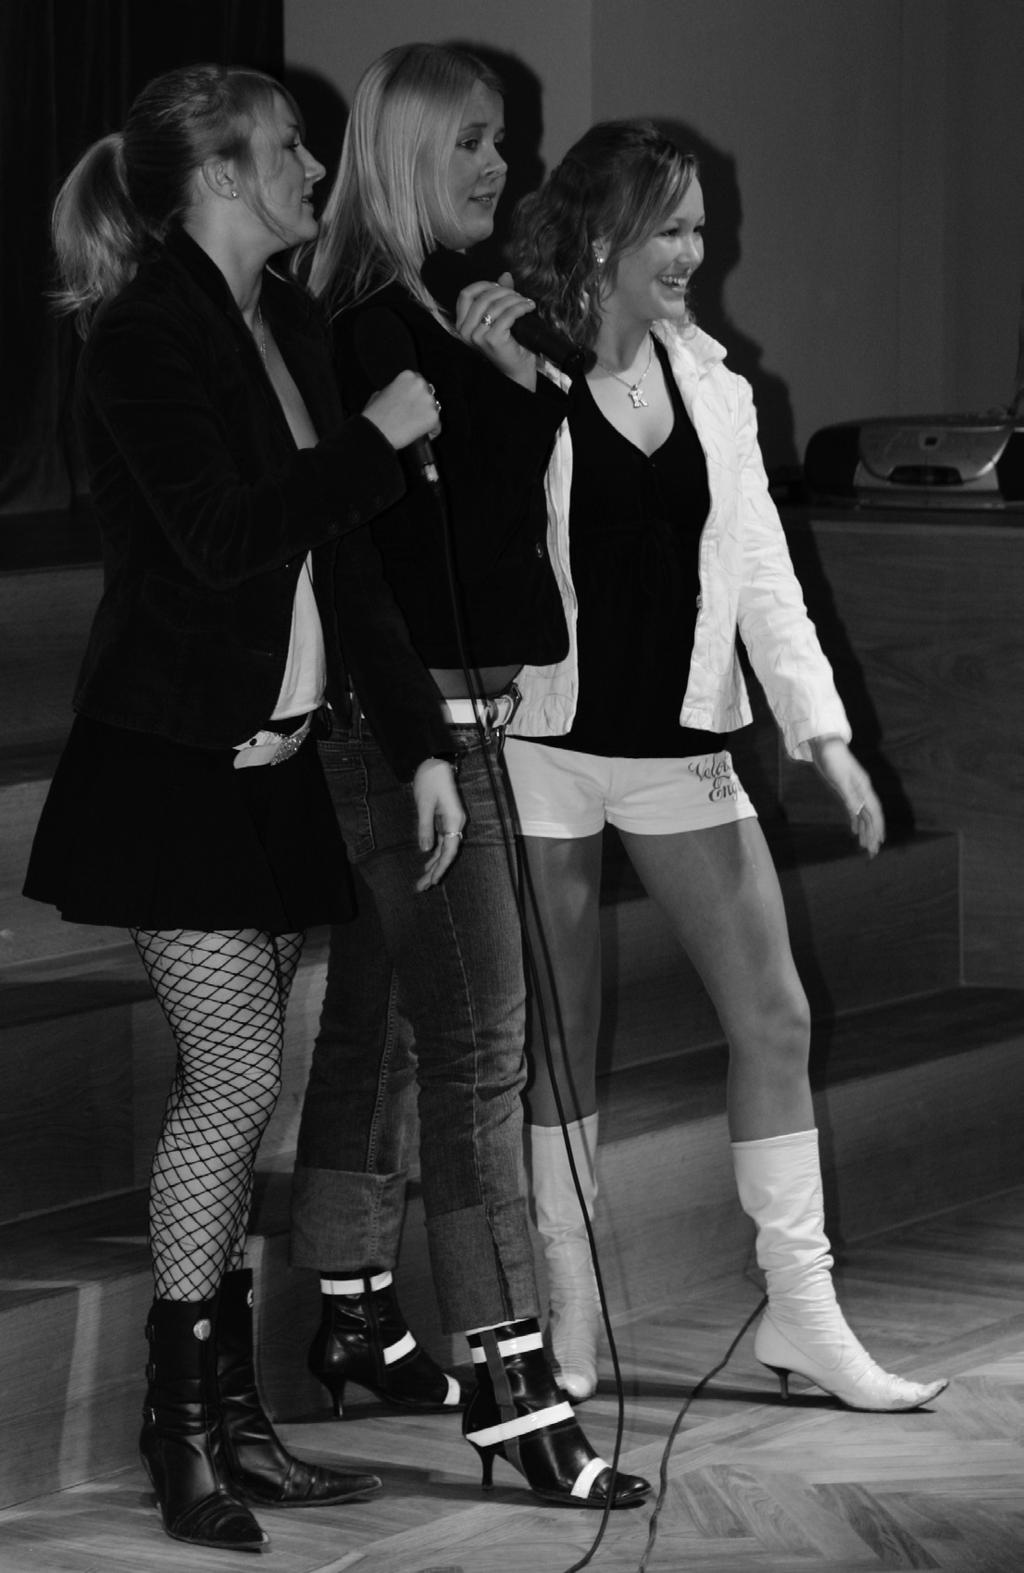 4 Kokkuvõte karaokevõistlusest Meie KG, 16. november 2005 sai eripreemia 10.e klass. Näkineiu ja dueti eripreemiad läksid vastavalt 10.c ja 12.a kassile.